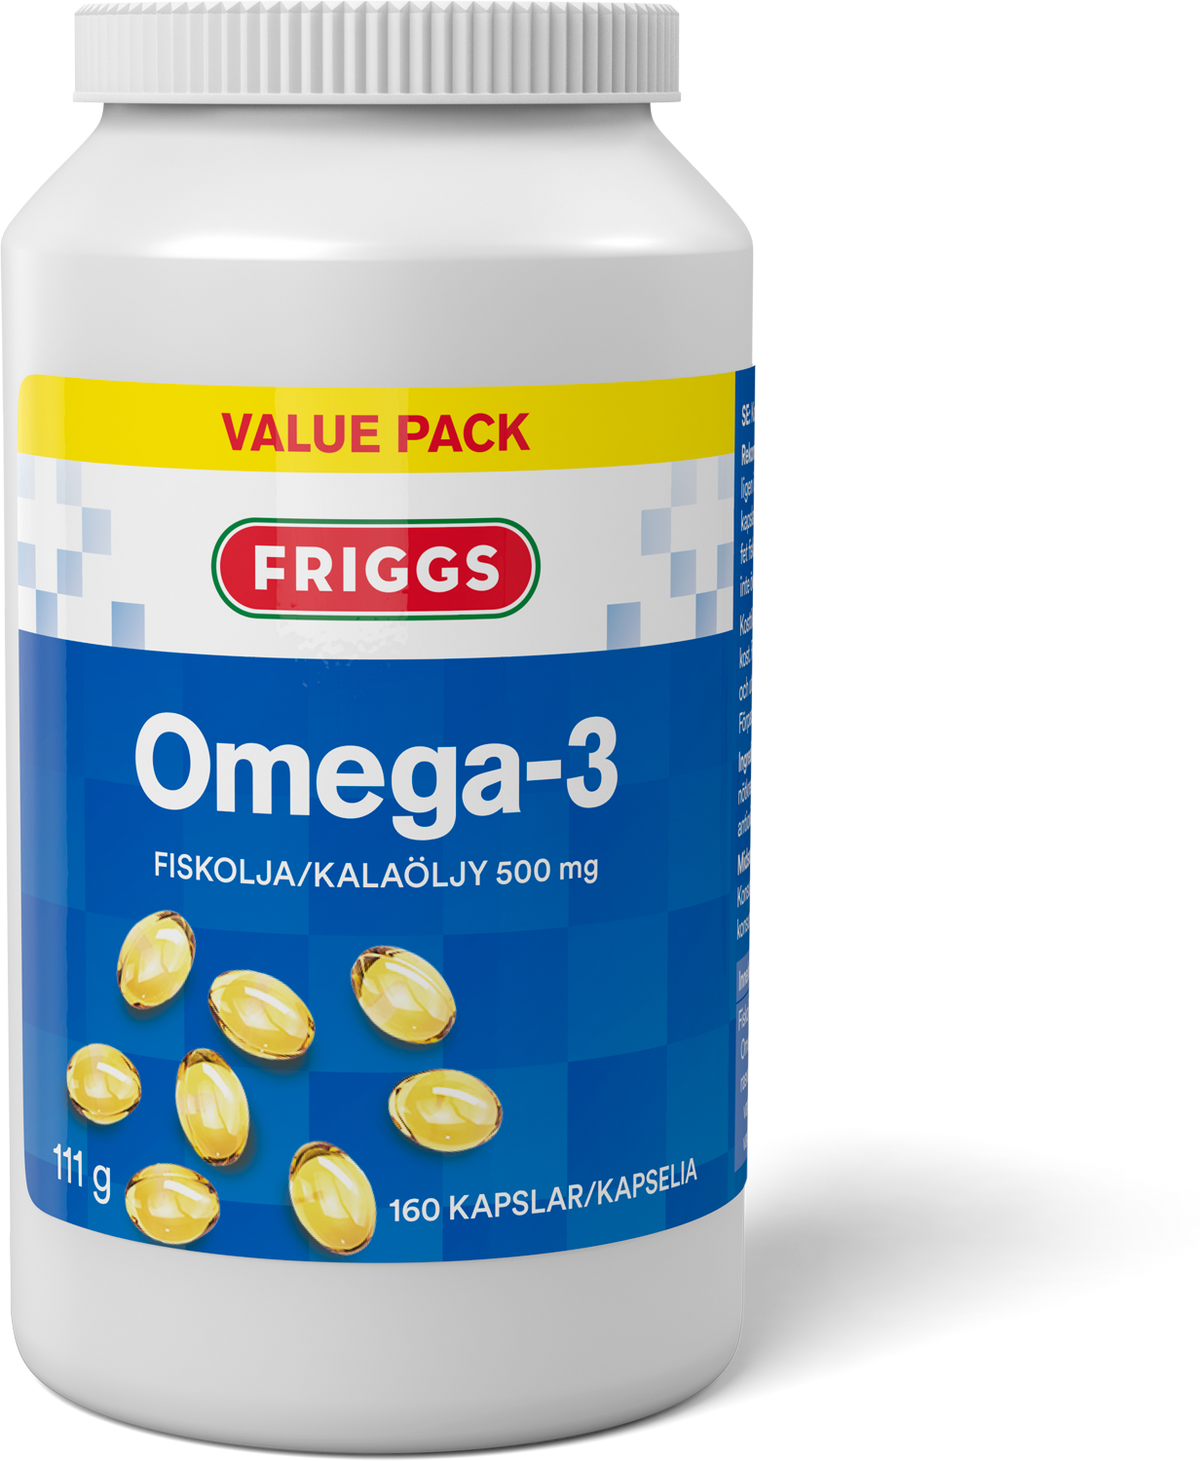 Friggs Omega-3 Kalaöljykapseli 160 kaps.